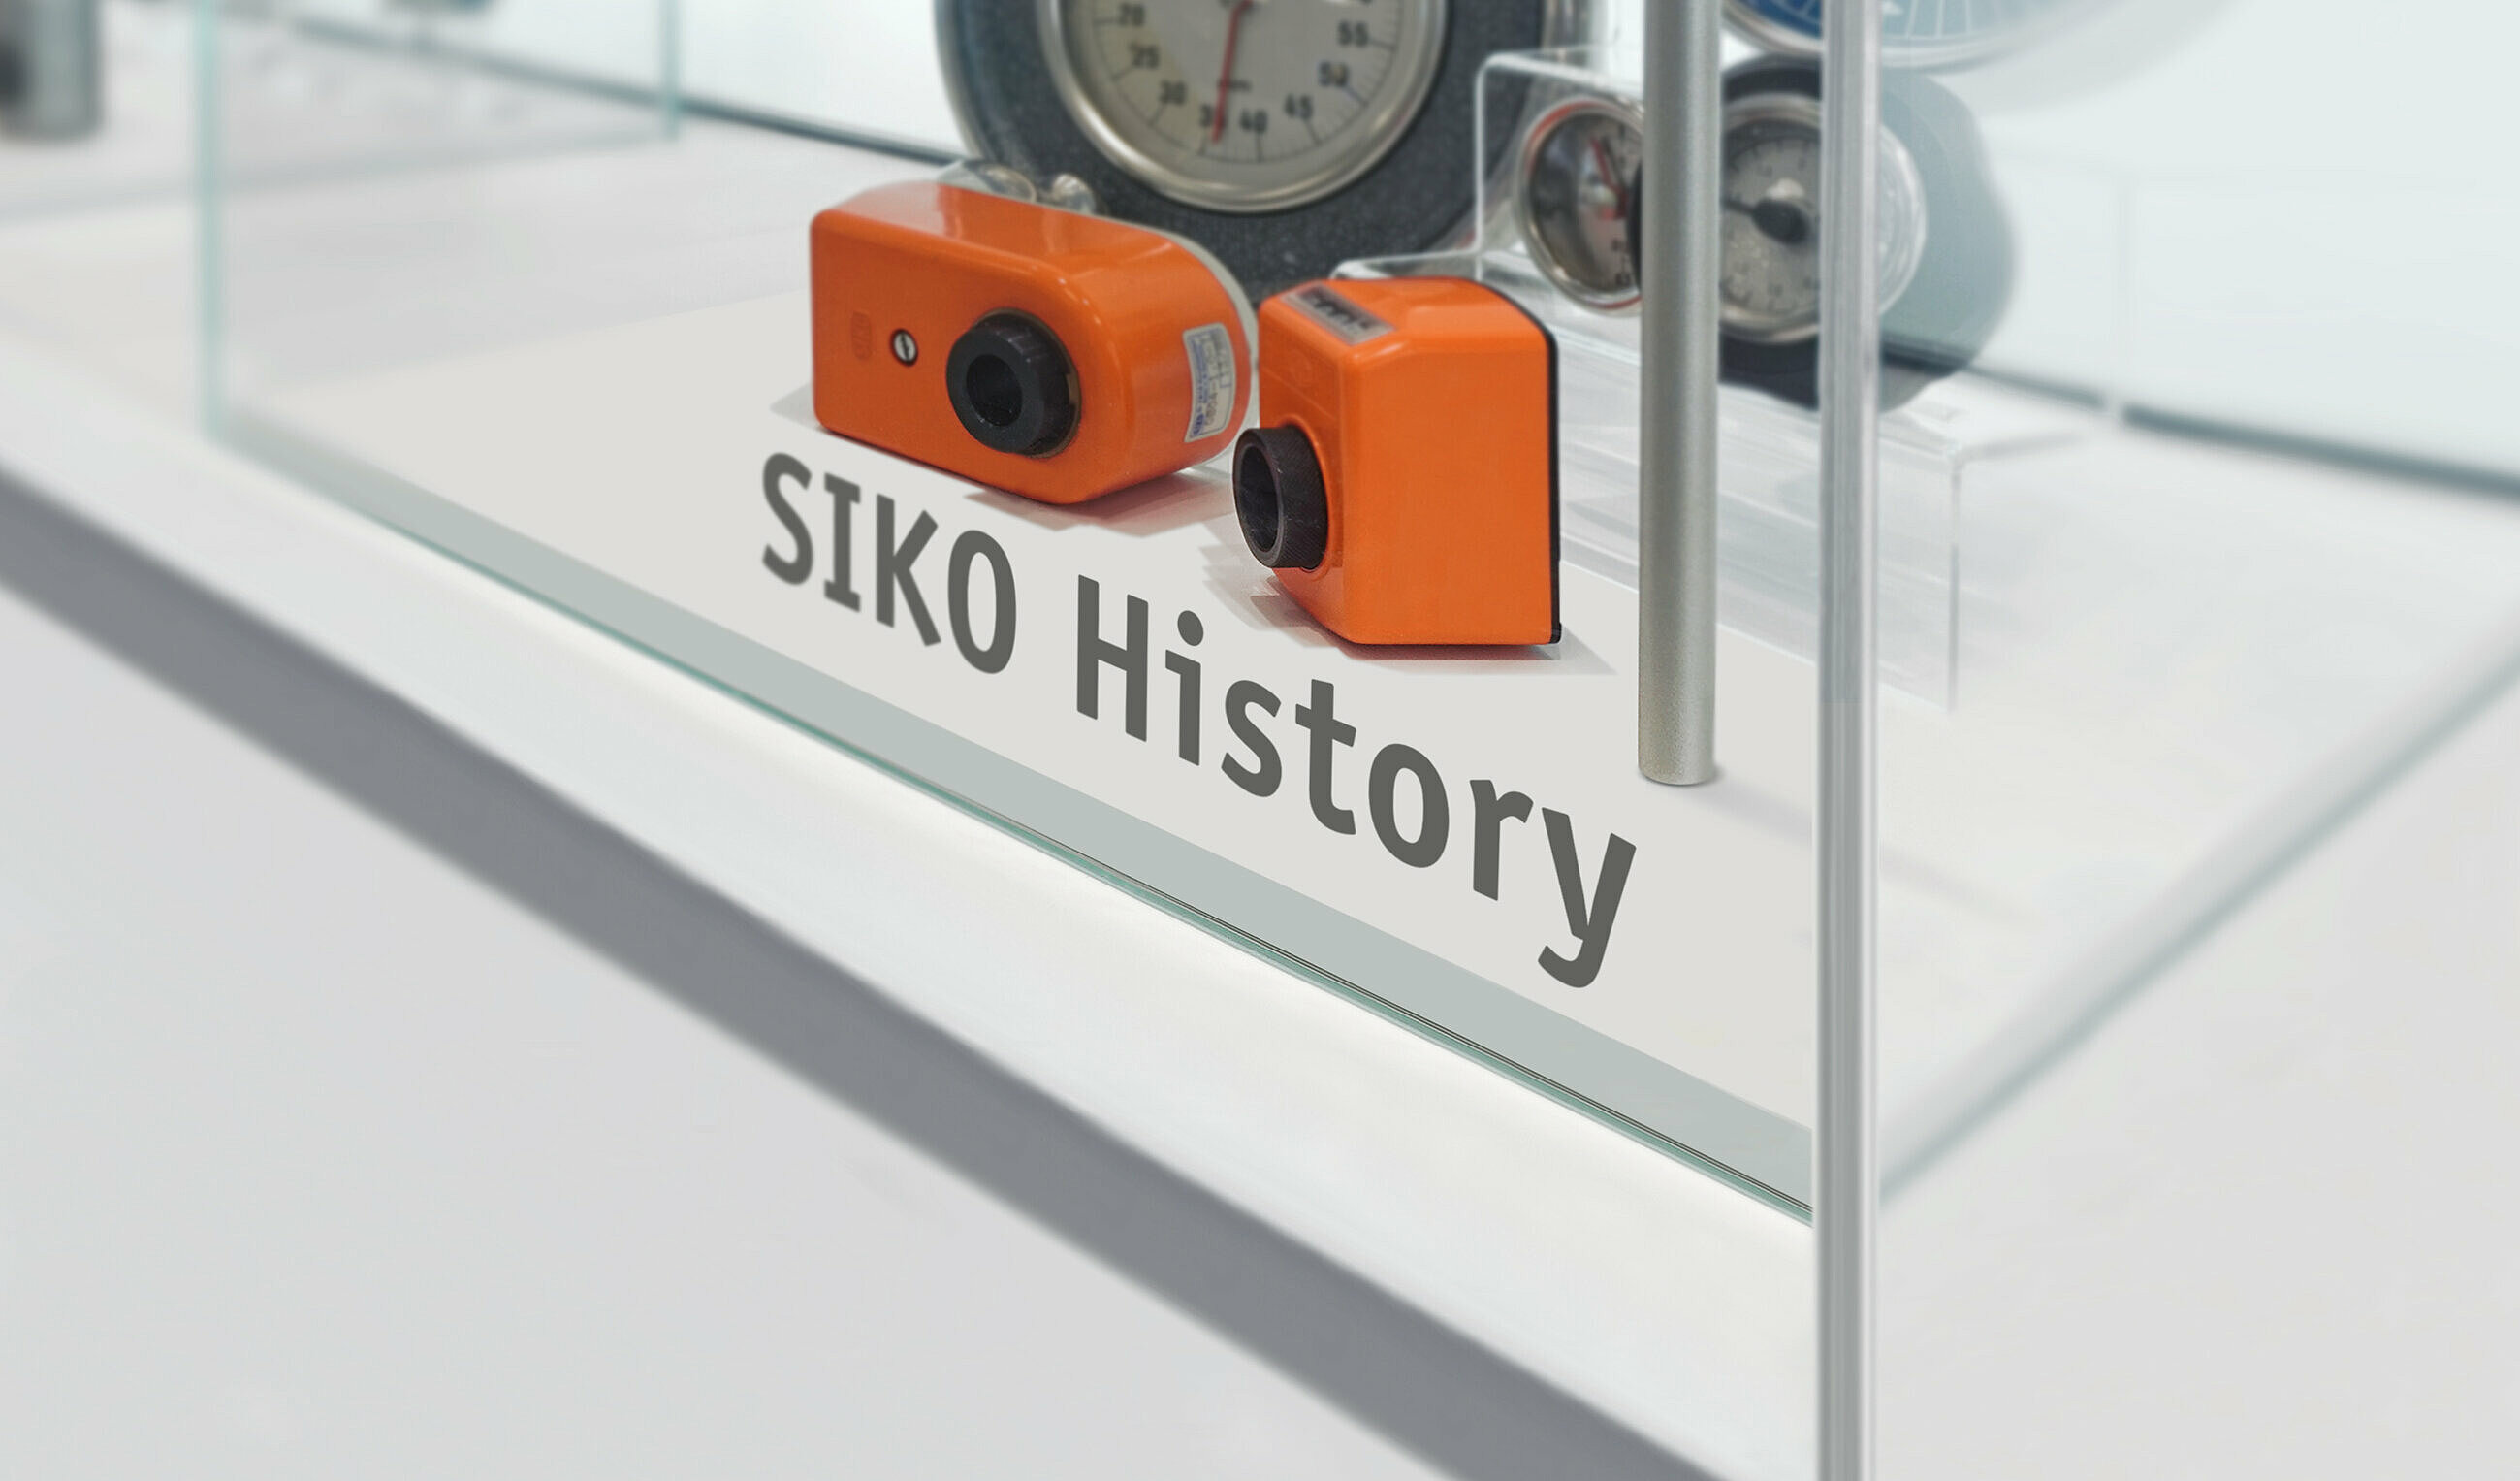 Productos históricos de SIKO expuestos en una vitrina de vidrio